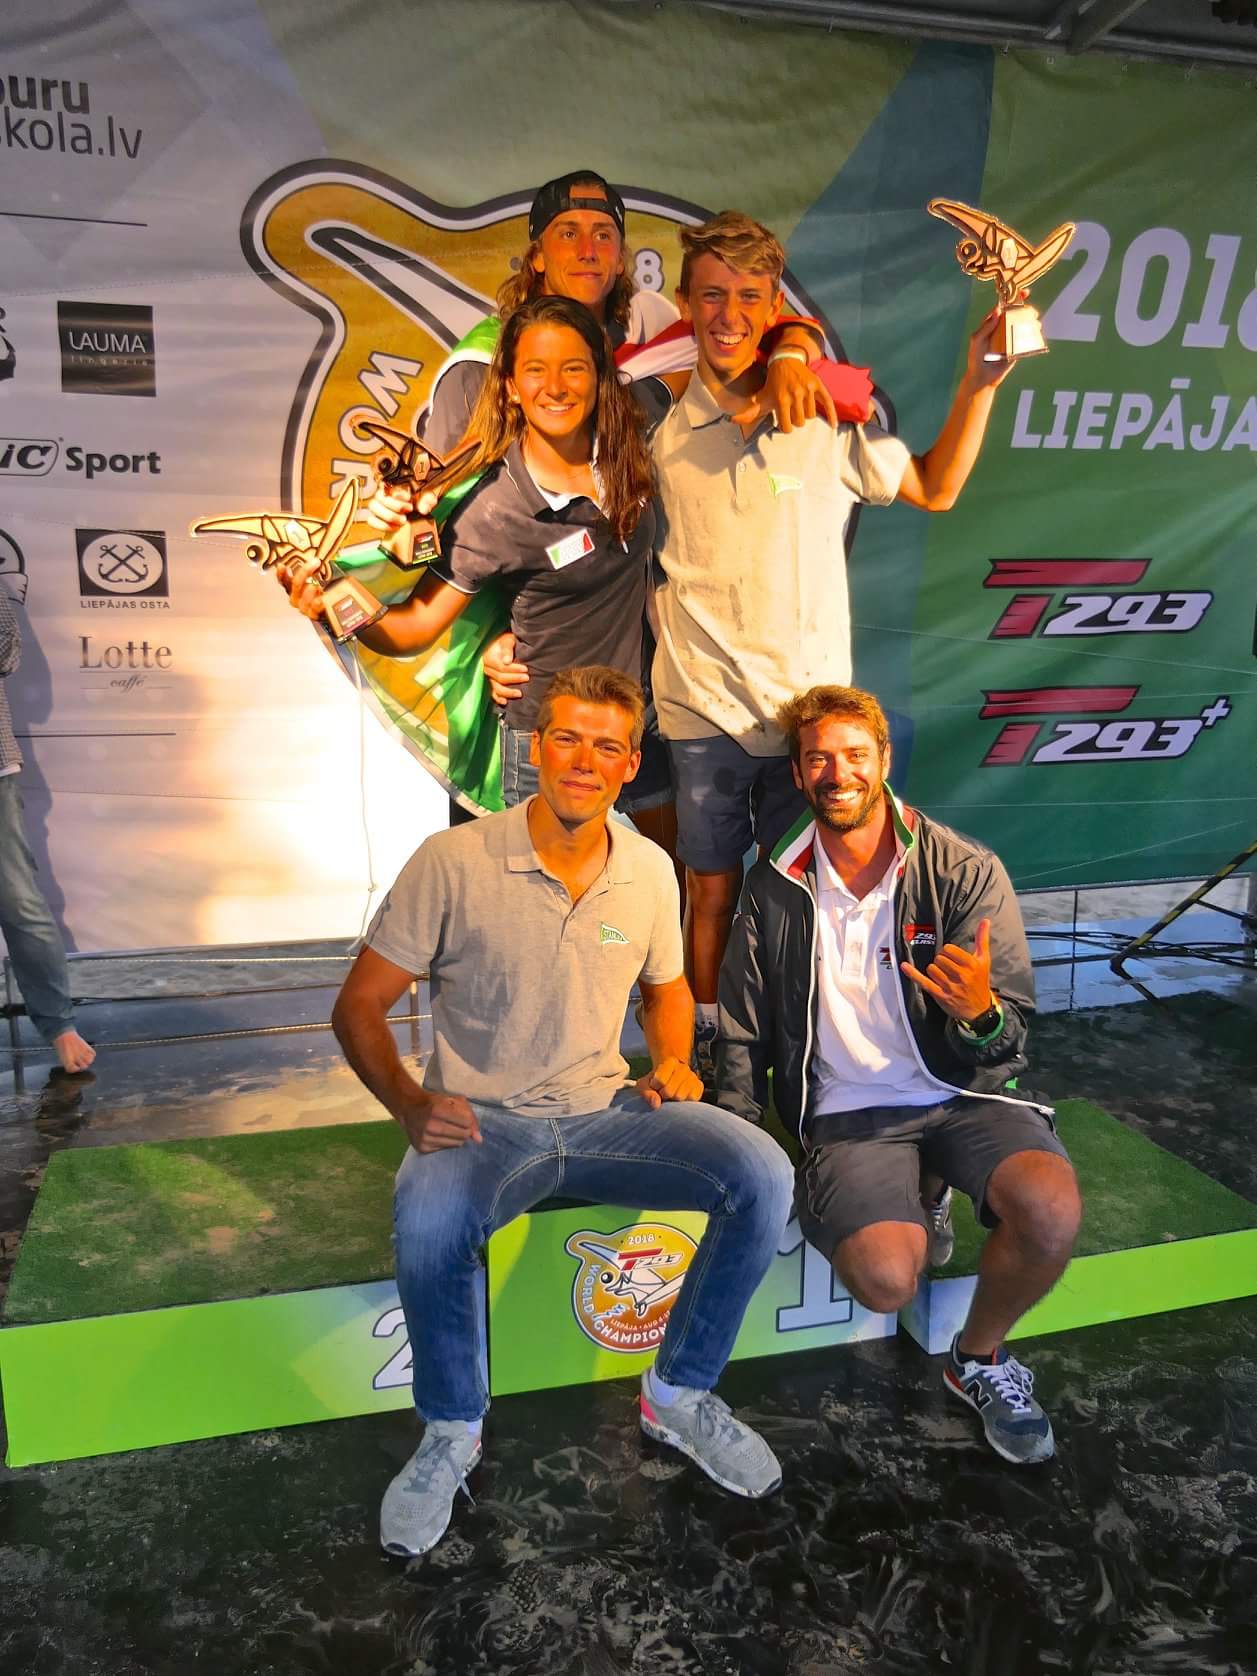 Nicolo Renna, Giorgia Speciale e Alessandro Graciotti - Mondiali Techno 293 Liepāja, Lettonia